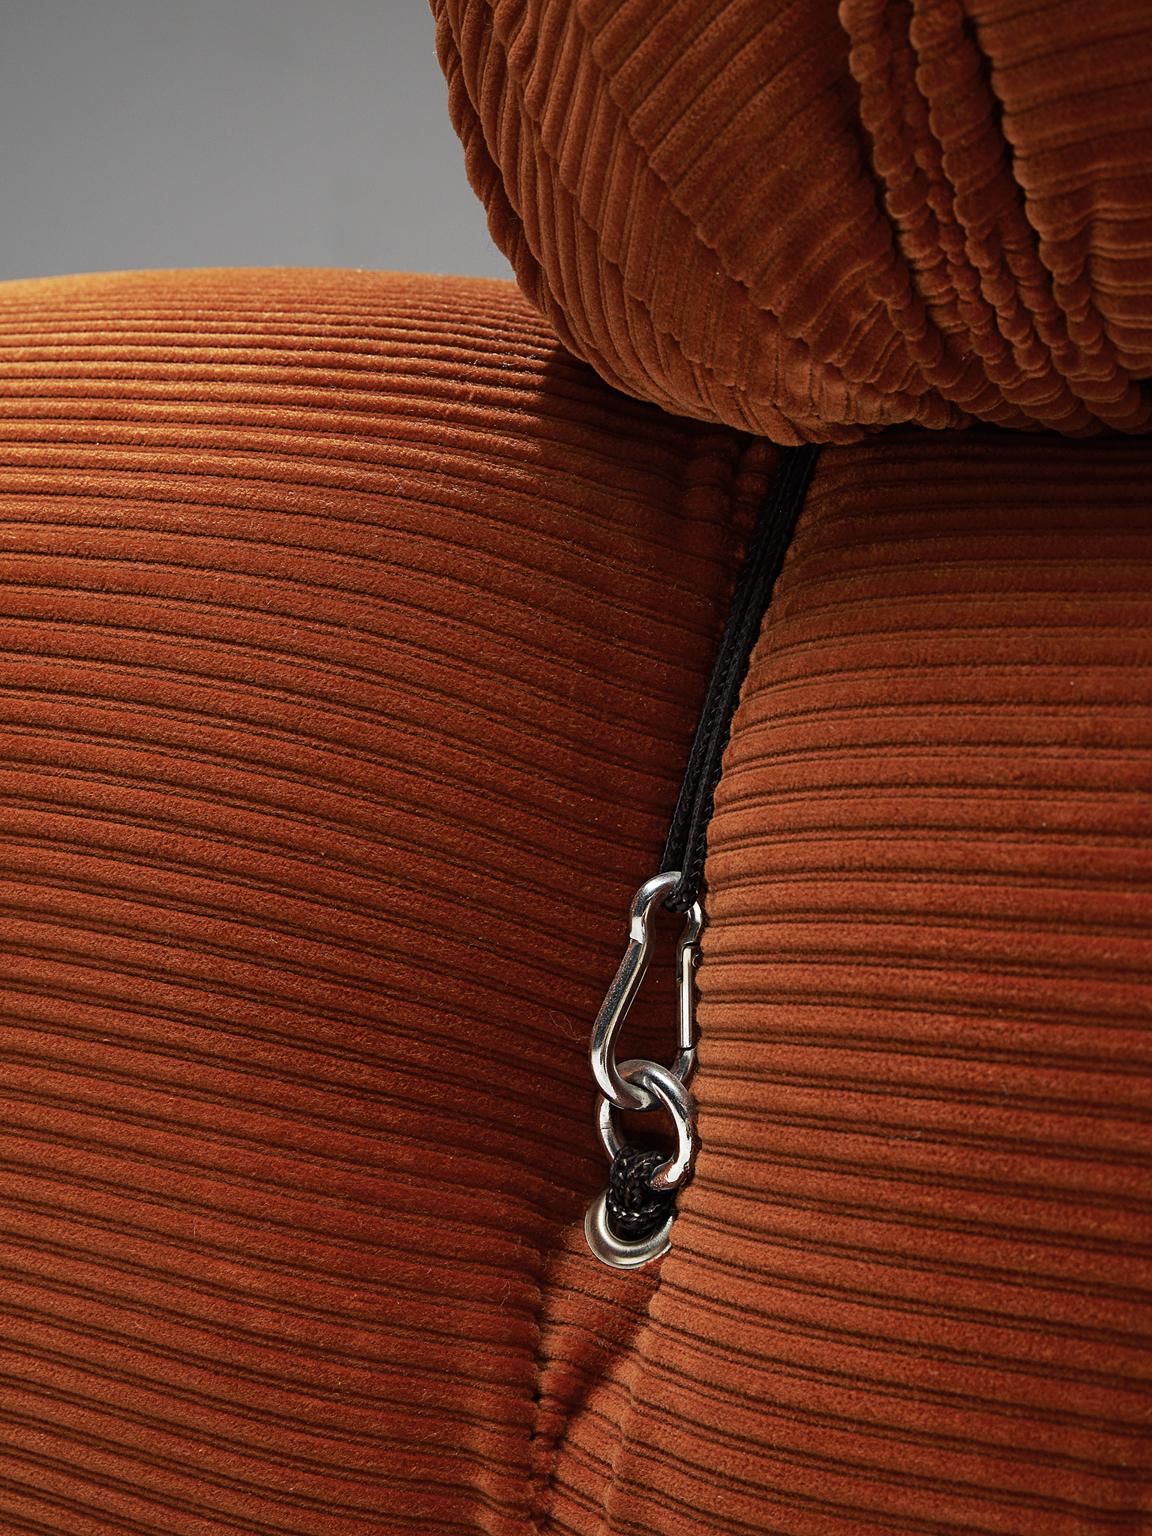 Fabric Original Deep Orange Mario Bellini Camaleonda Elements 